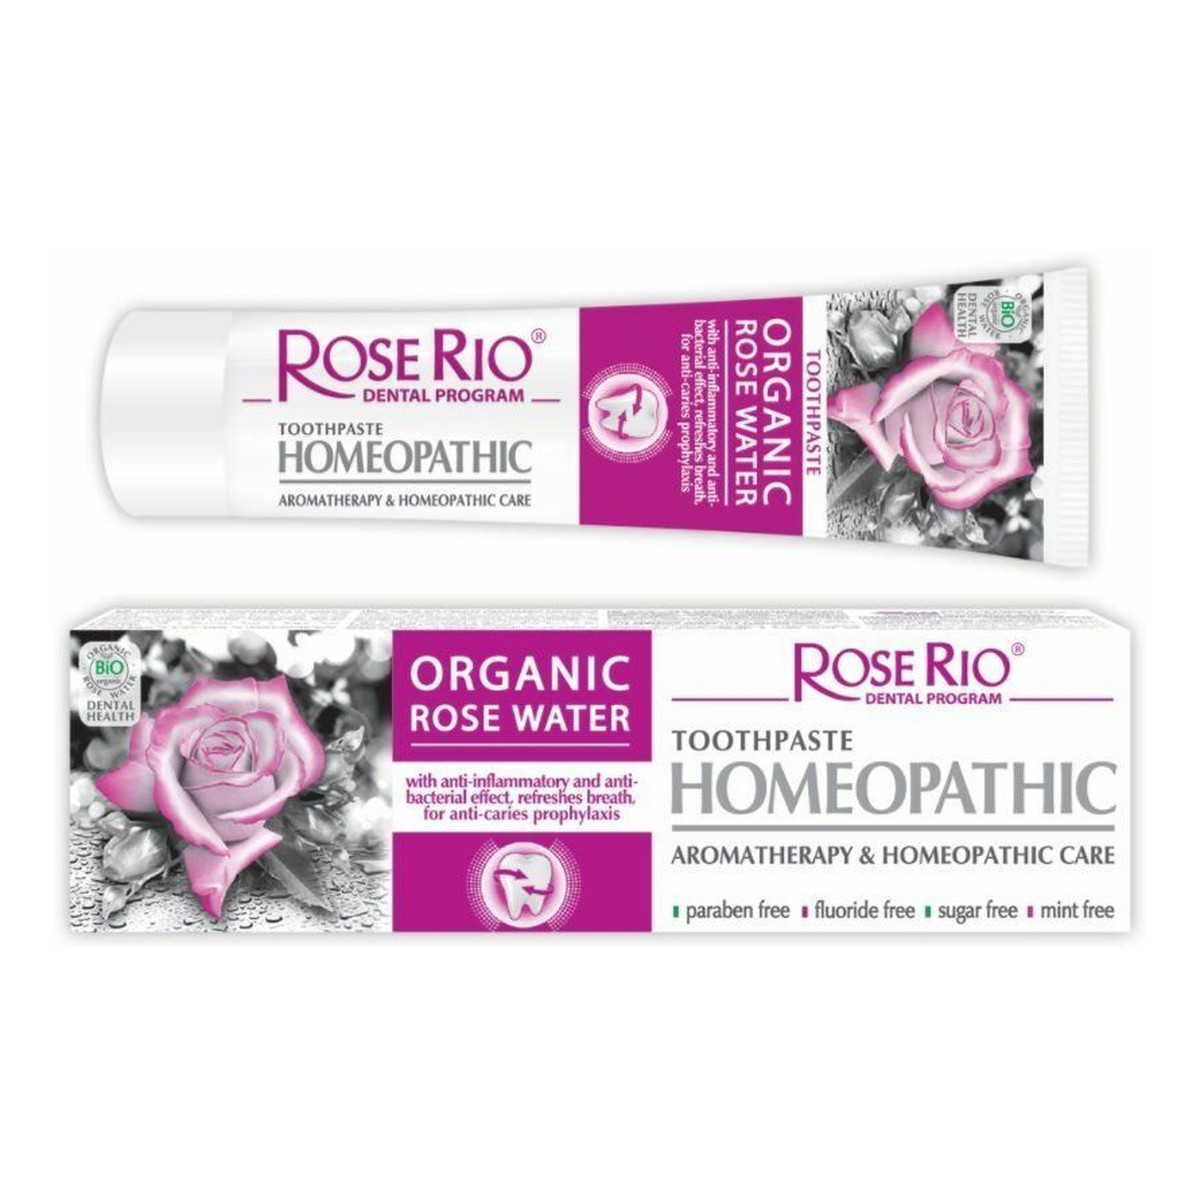 STS Cosmetics Rose Rio Homeopathic Homeopatyczna Pasta do zębów 65ml